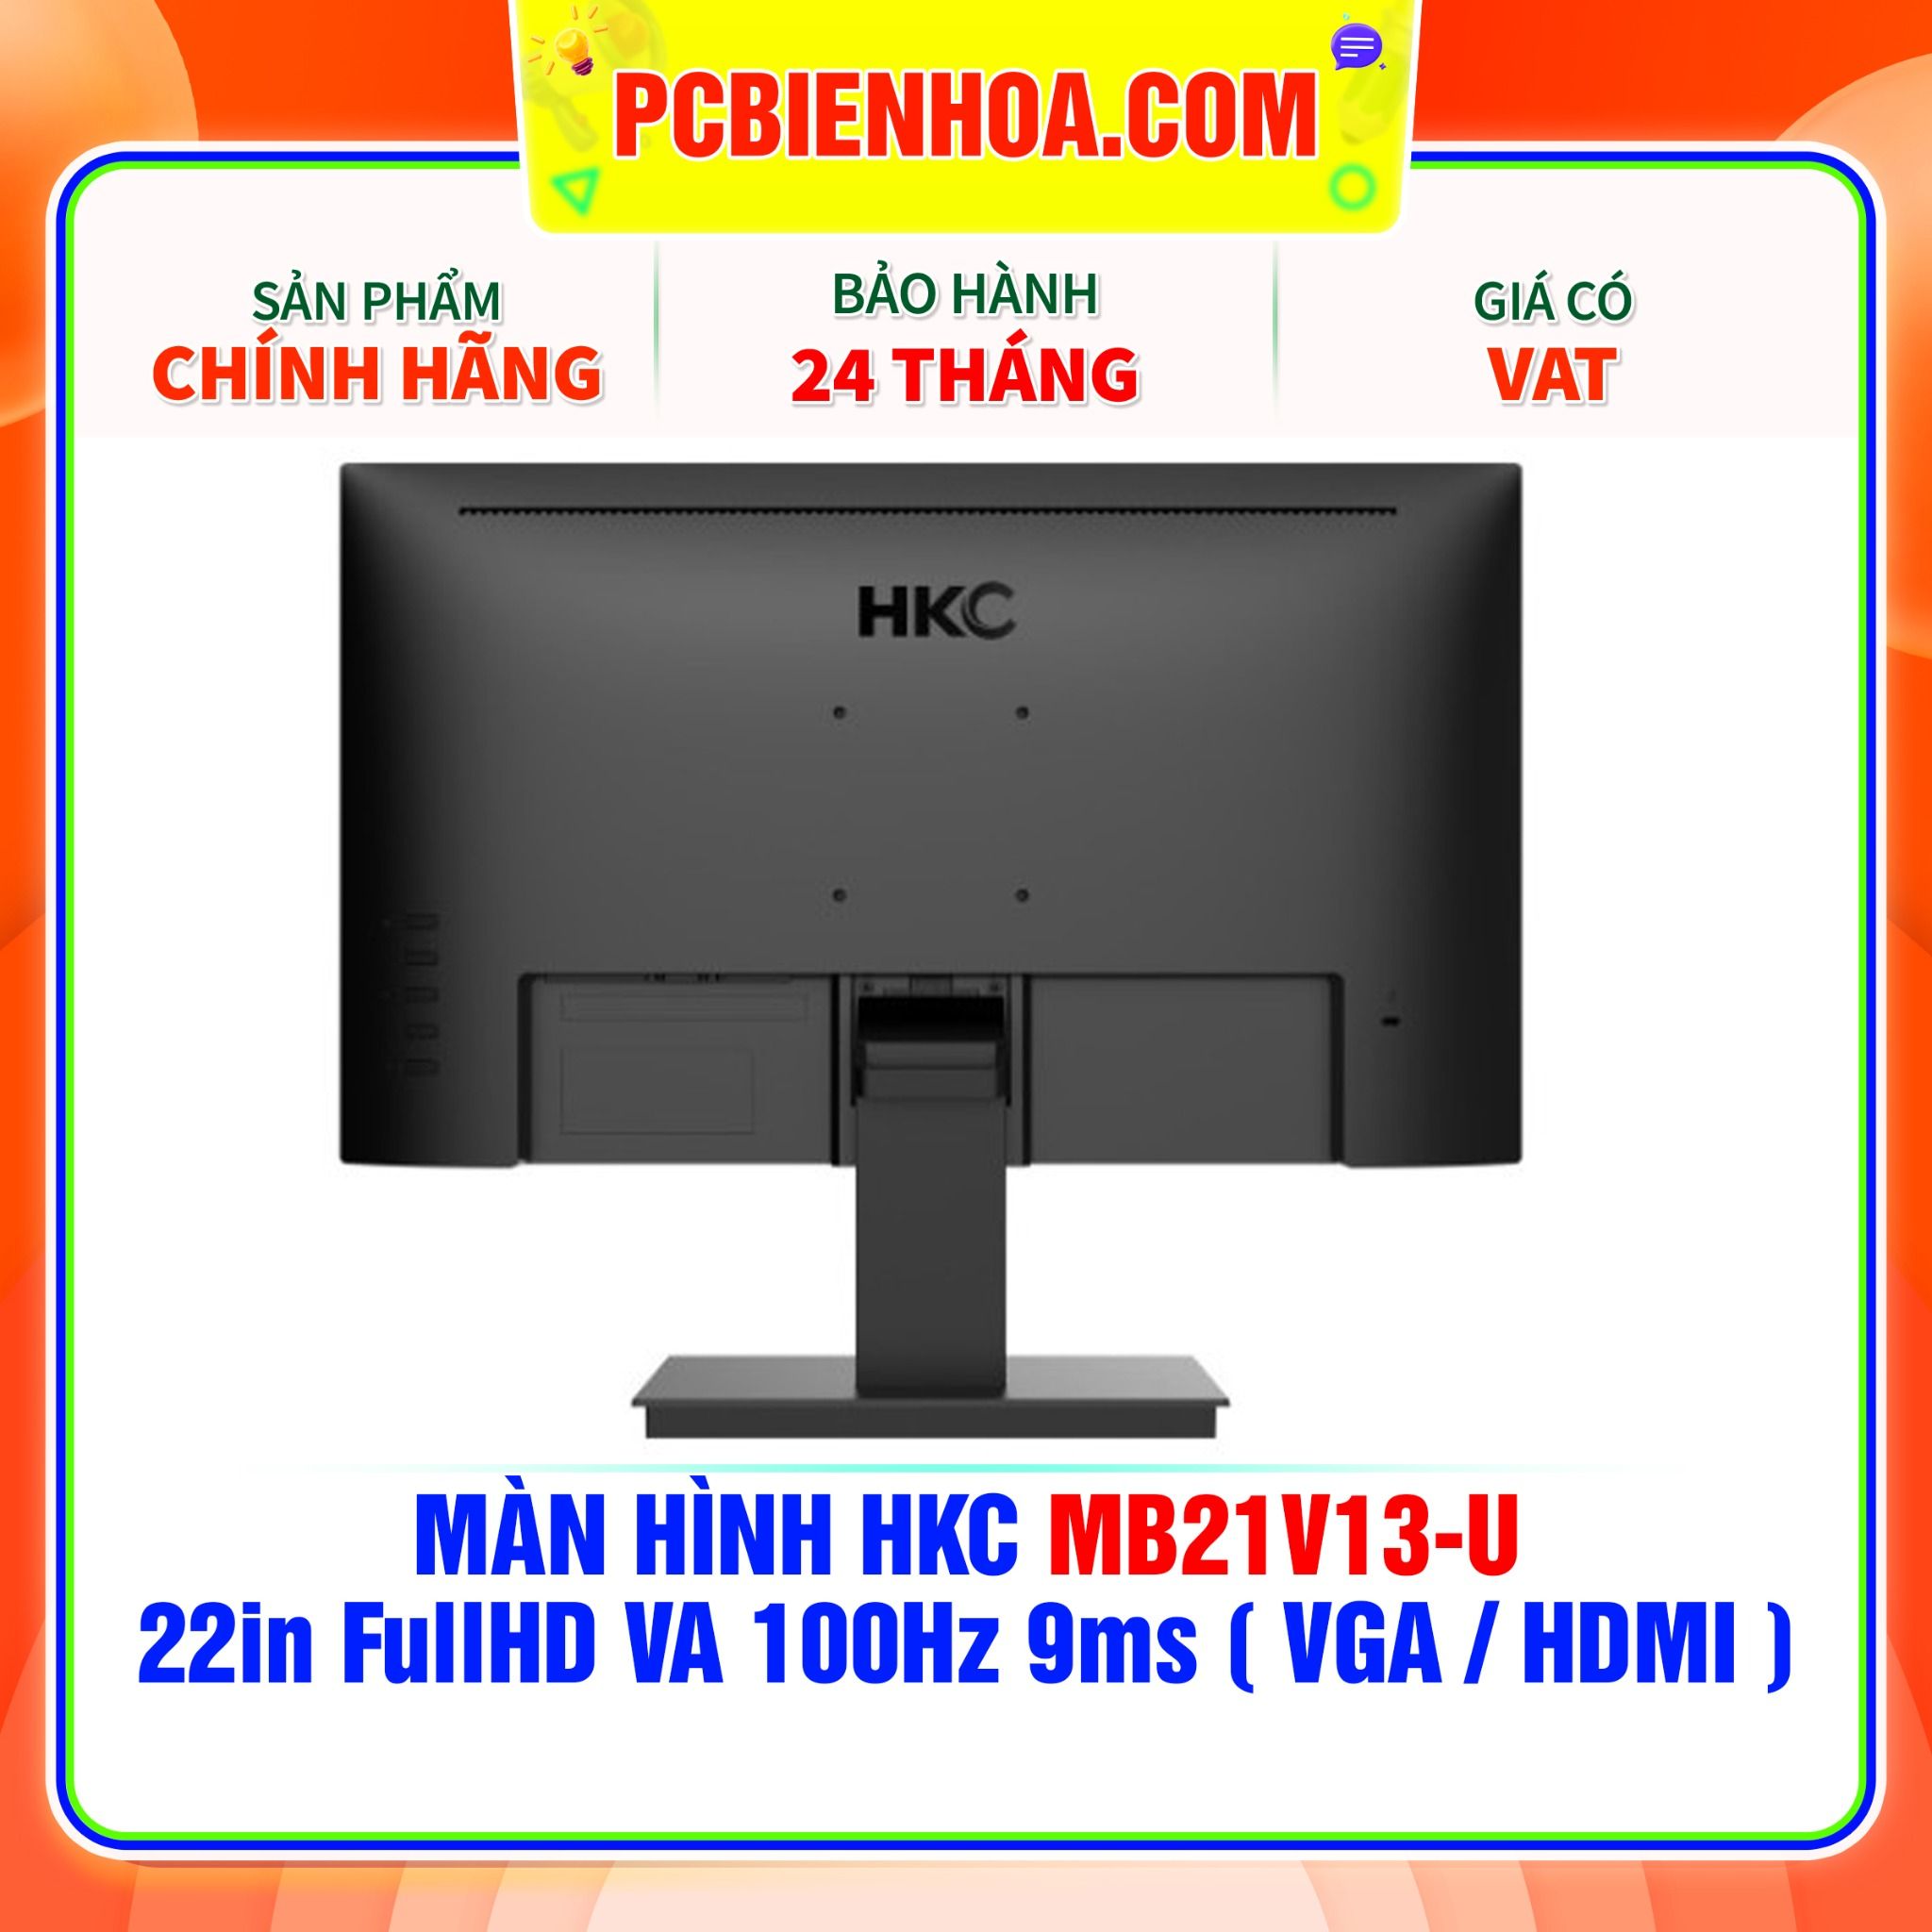  MÀN HÌNH HKC MB21V13-U 22in FullHD VA 100Hz 9ms ( VGA / HDMI ) 